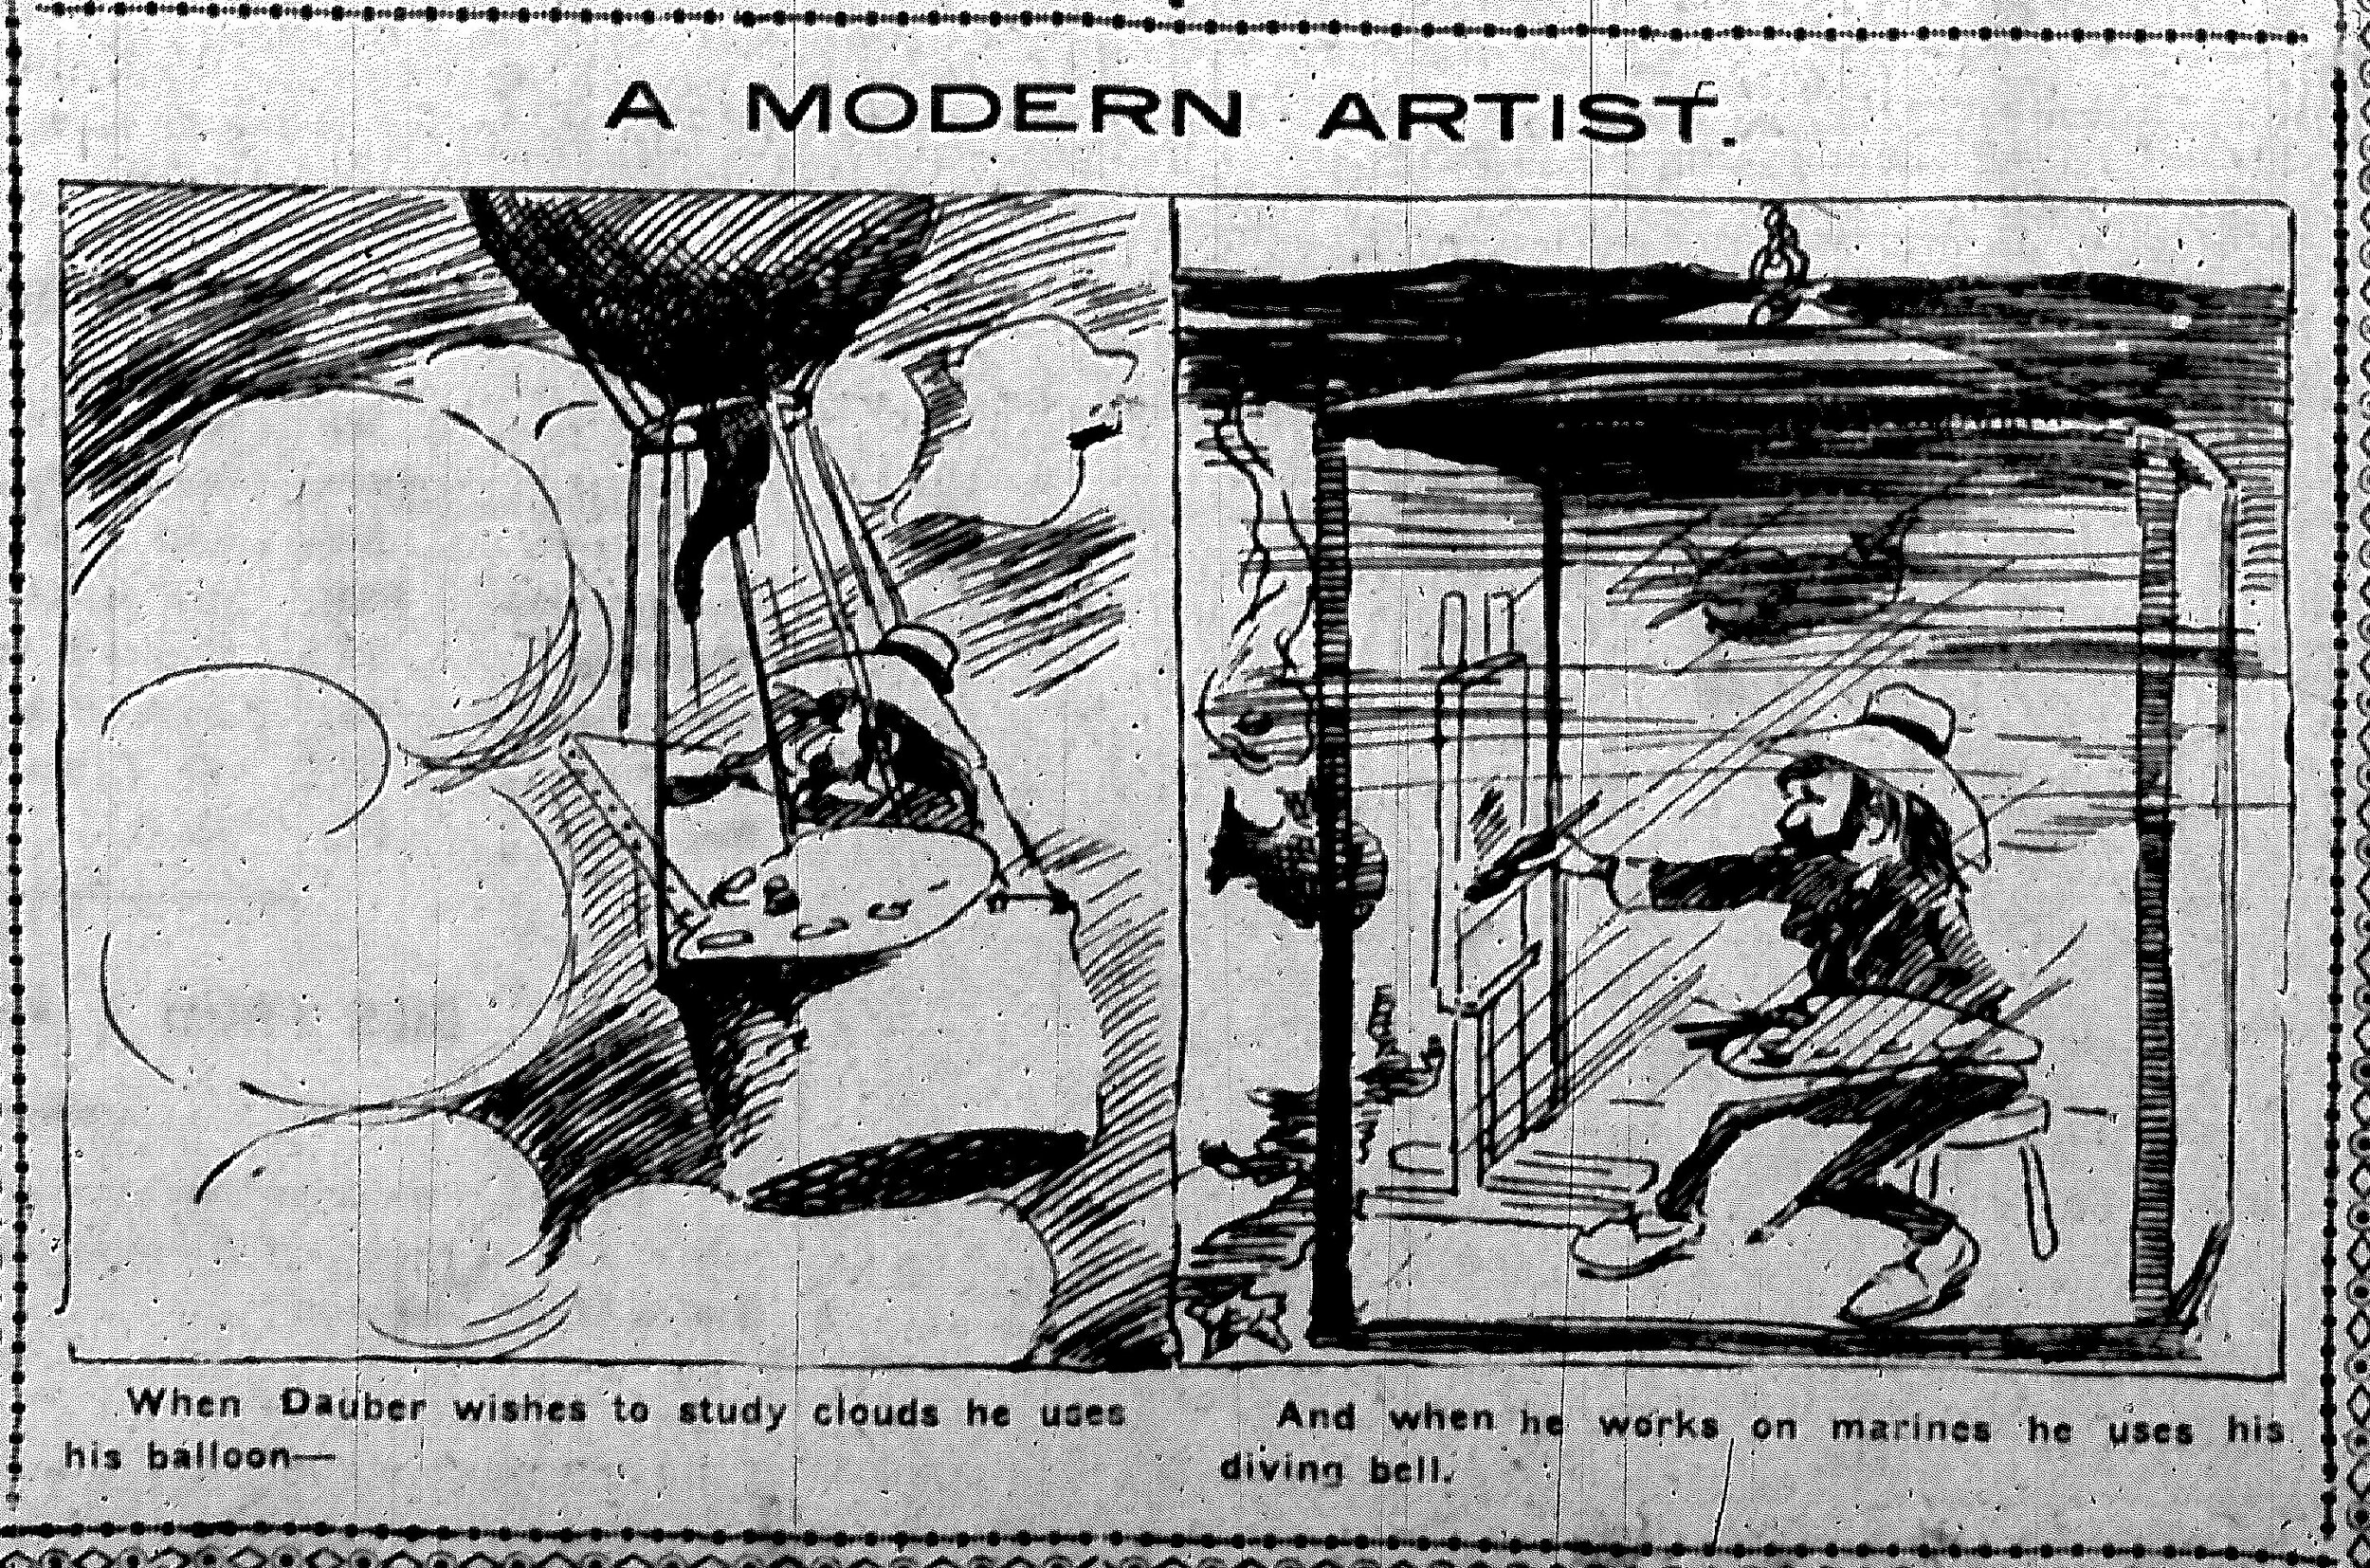 04-nyej-01-15-1901-herriman-cartoon.jpg